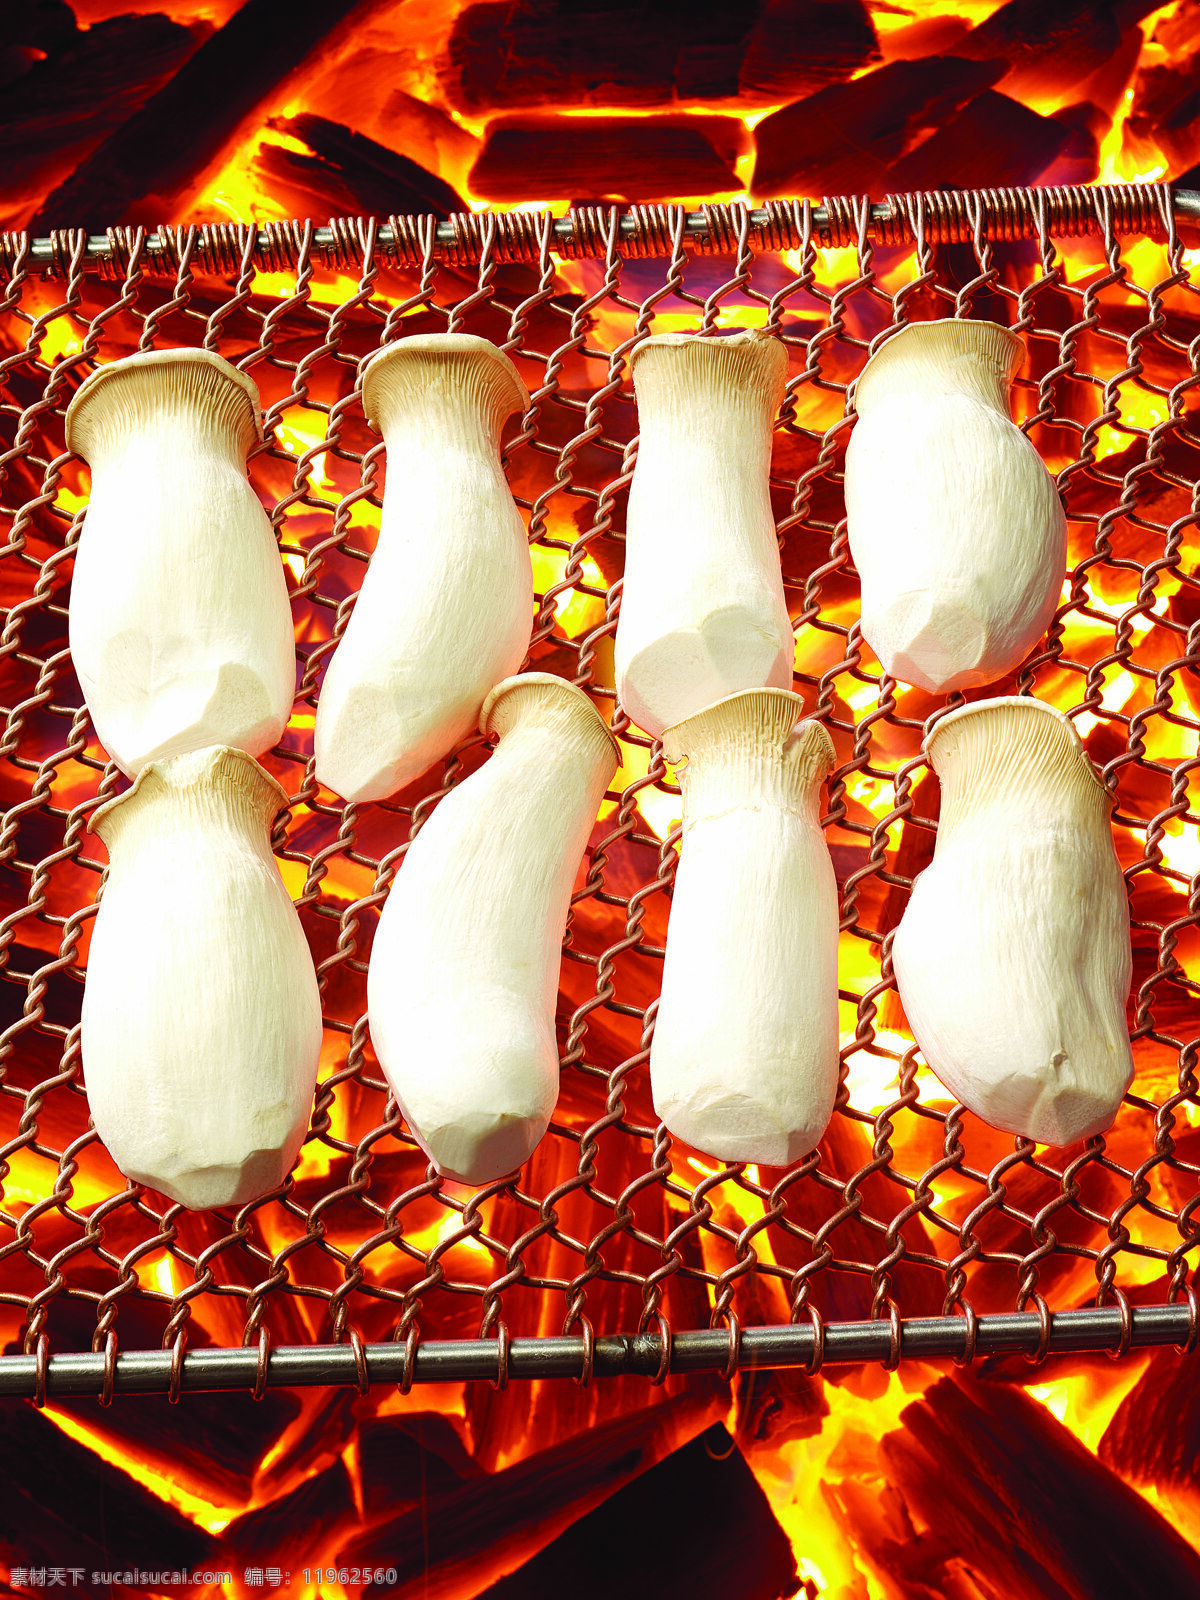 蘑菇 菌类 烧烤 生物世界 蔬菜 烤蘑菇 蔬菜主题 风景 生活 旅游餐饮